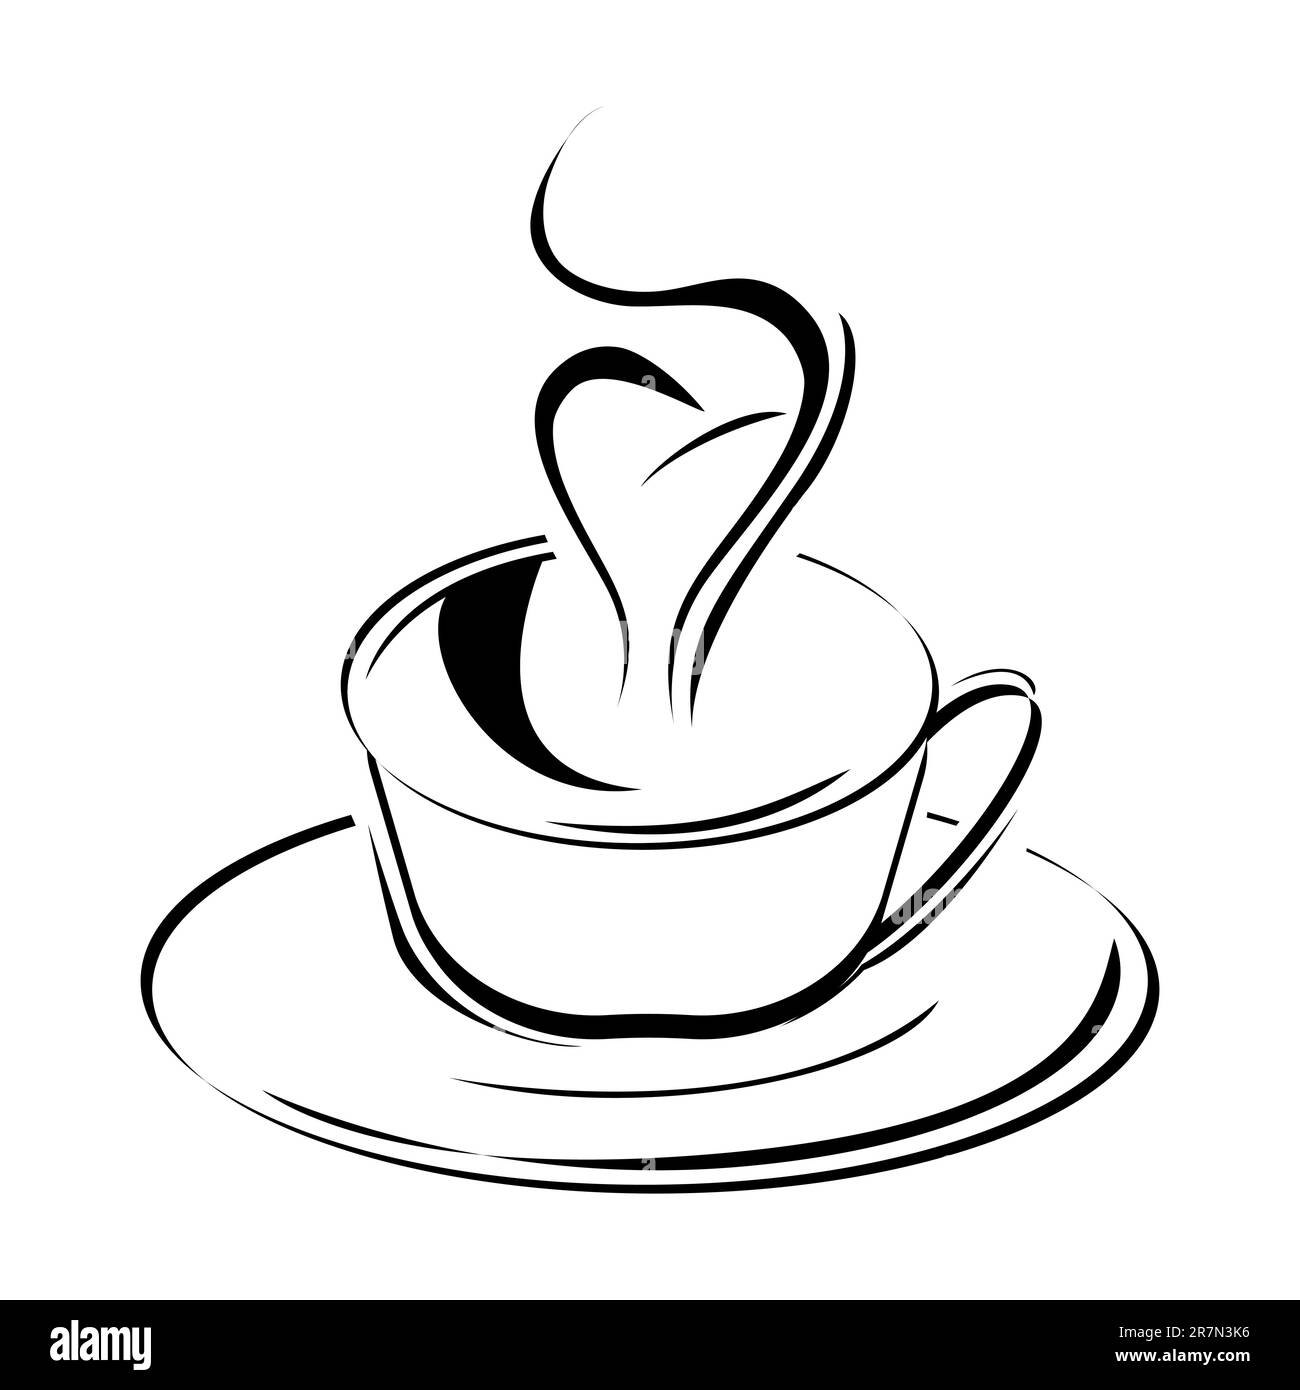 Illustrazione di sketchy tazza da caffè su sfondo isolato Illustrazione Vettoriale